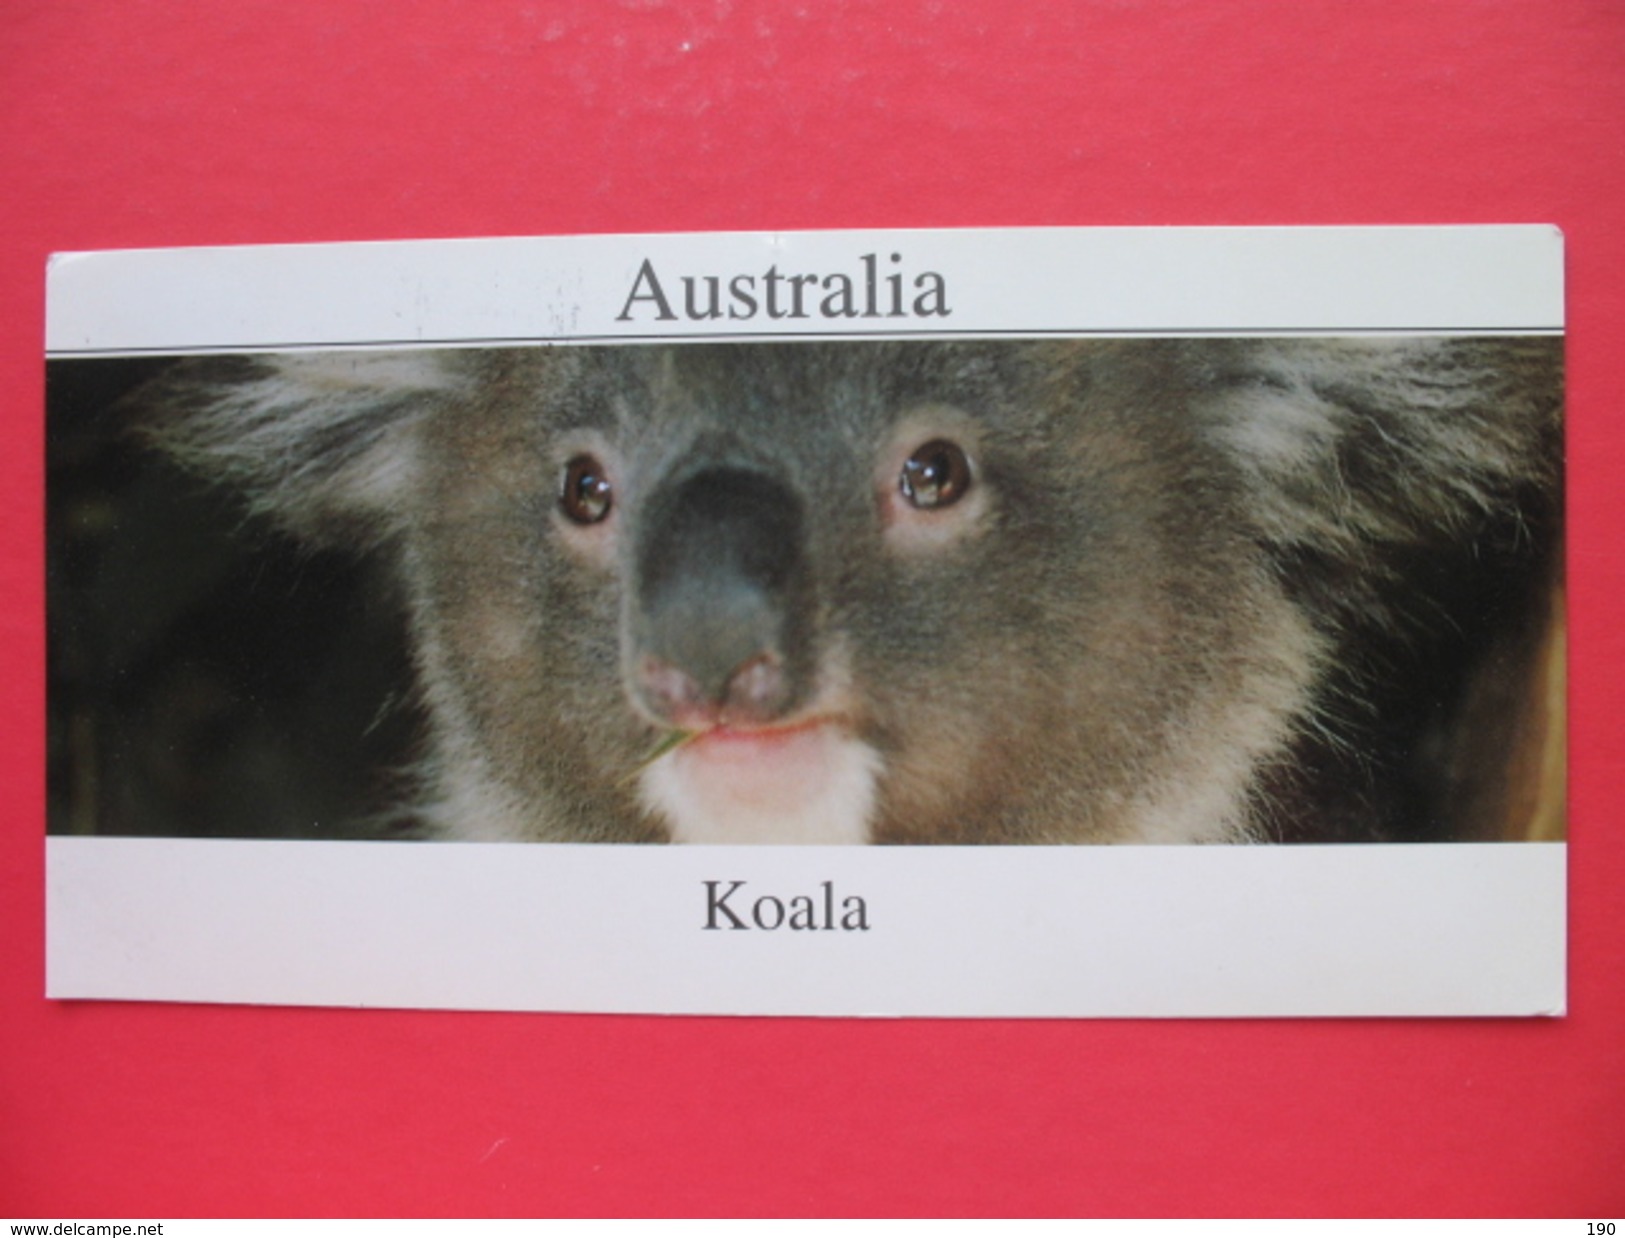 Koala - Outback